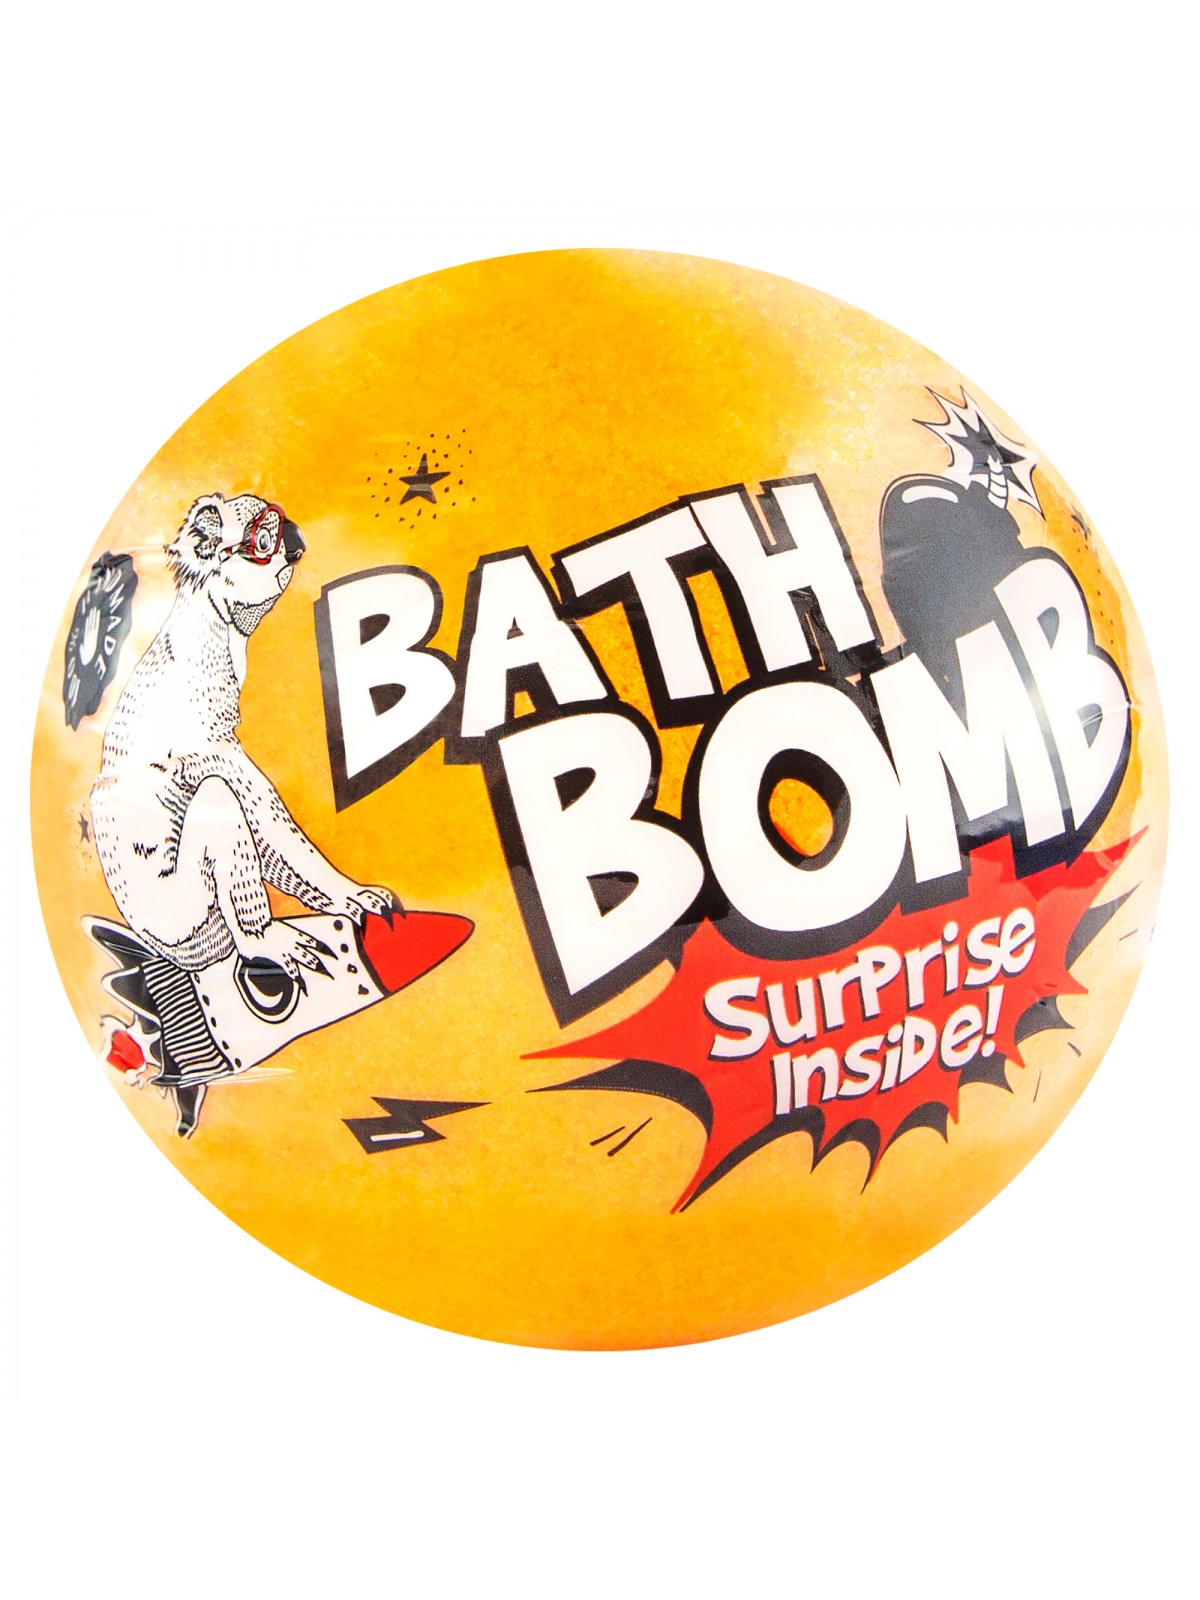 Bath bomb with a surprise ORANGE